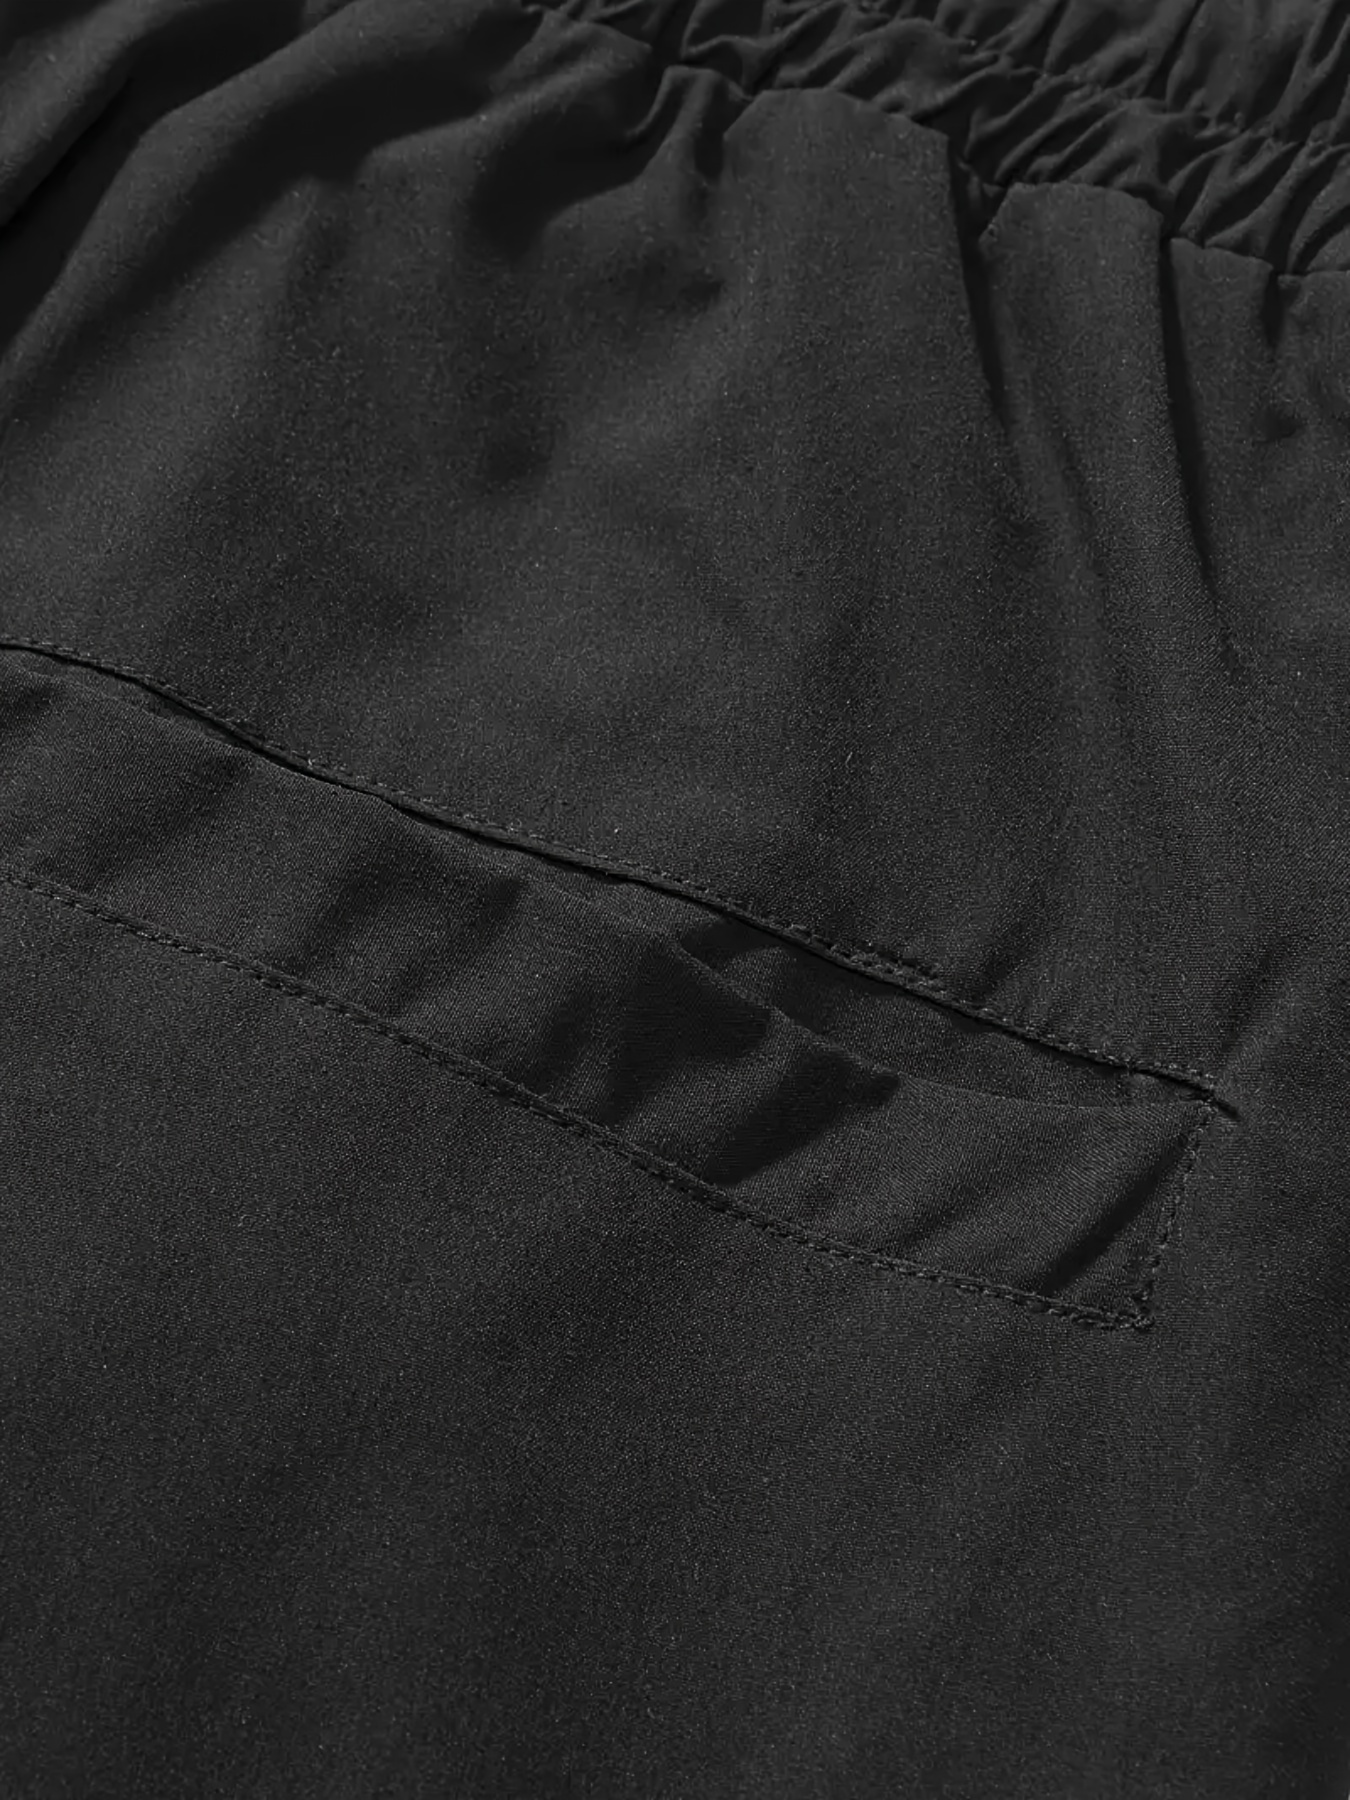 Pantalones Cargo Color Caqui Informales Simples Moda Nuevos - Temu